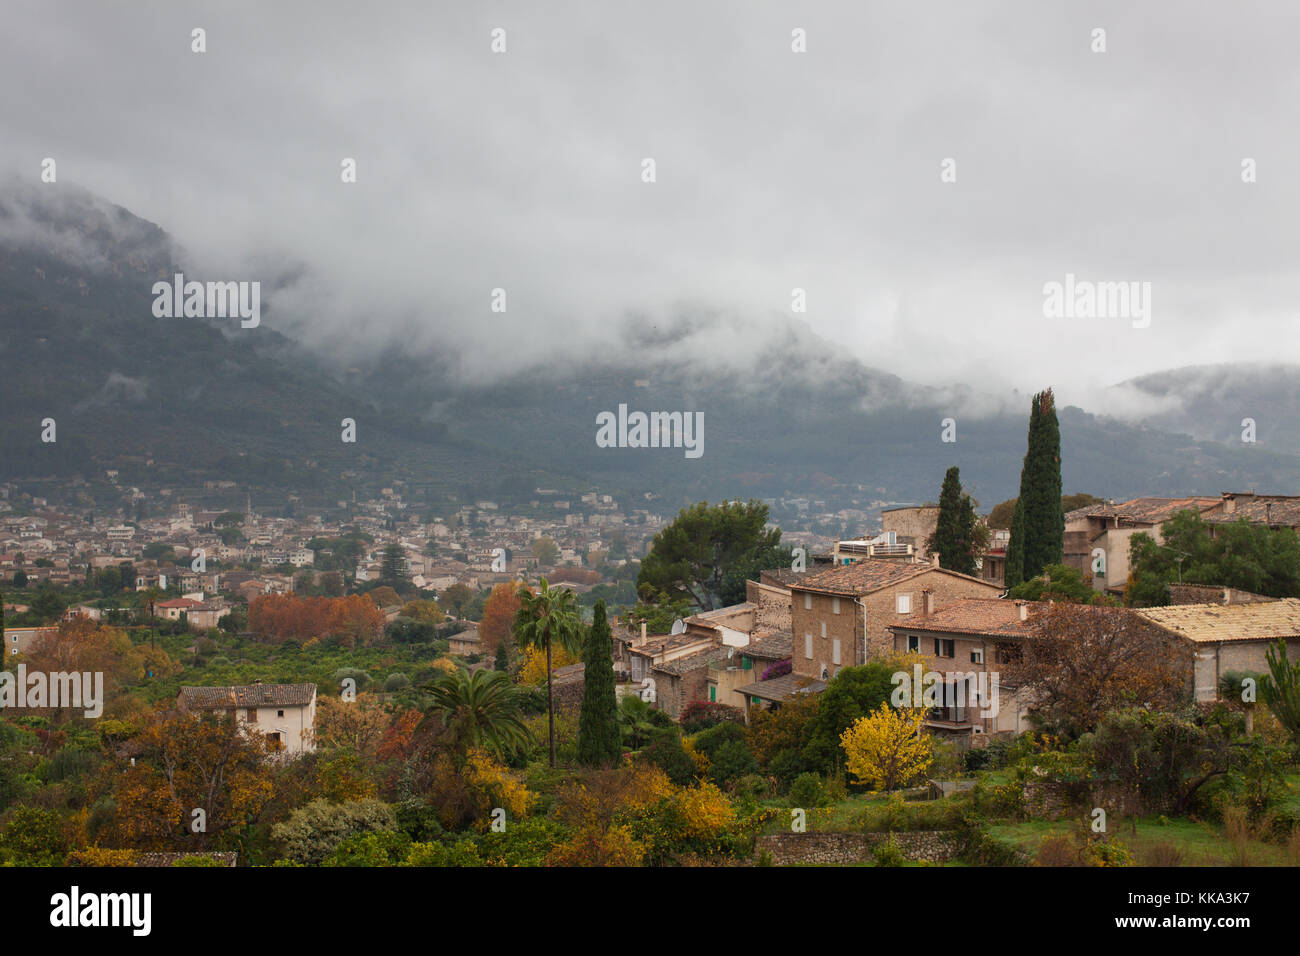 Anzeigen von biniaraix, einem kleinen Dorf in Soller Tal der Serra de Tramuntana Gebirge umgeben. Mallorca, Spanien Stockfoto